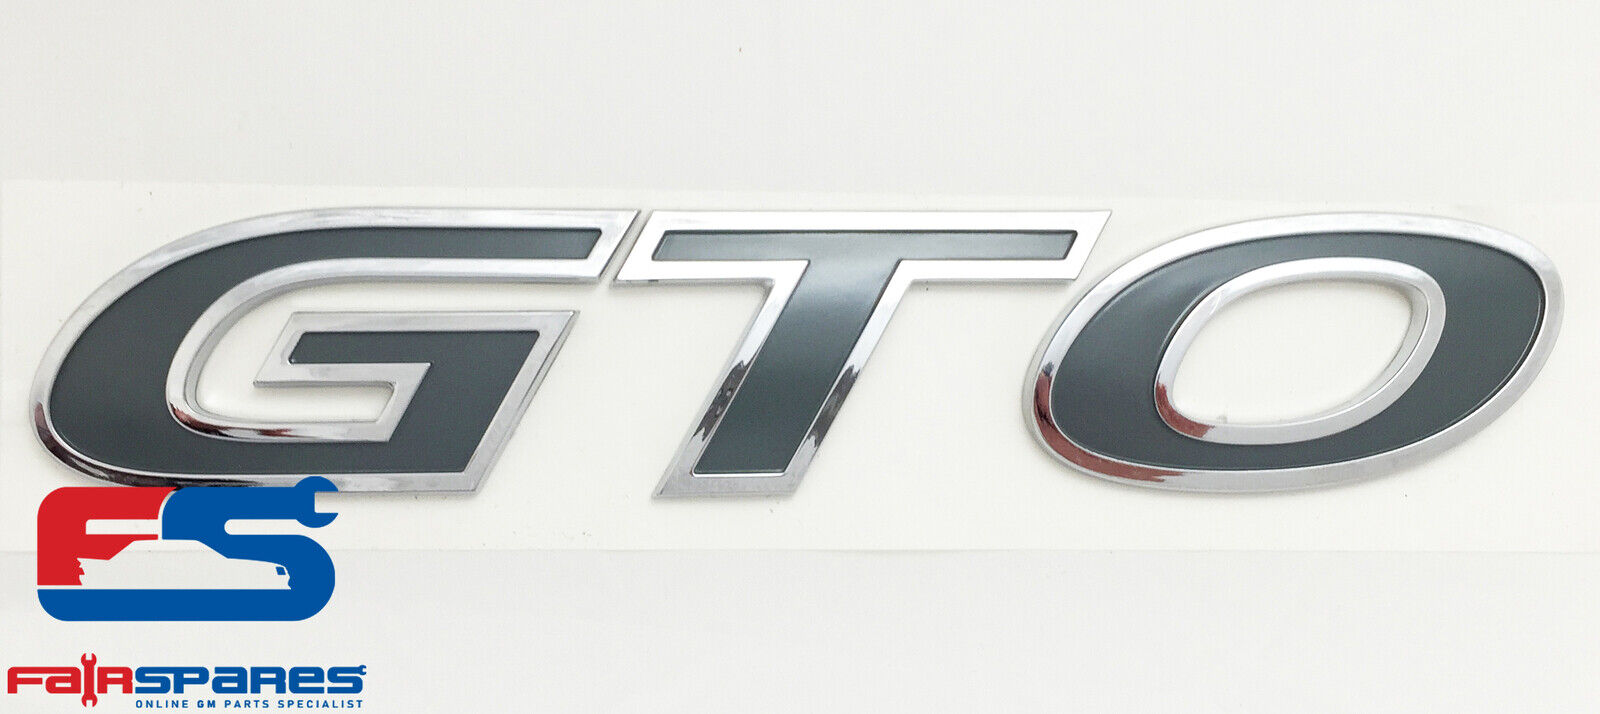 Genuine HSV GTO Coupe & Pontiac GTO Coupe Side Skirt Badge, Decal, Emblem NOS